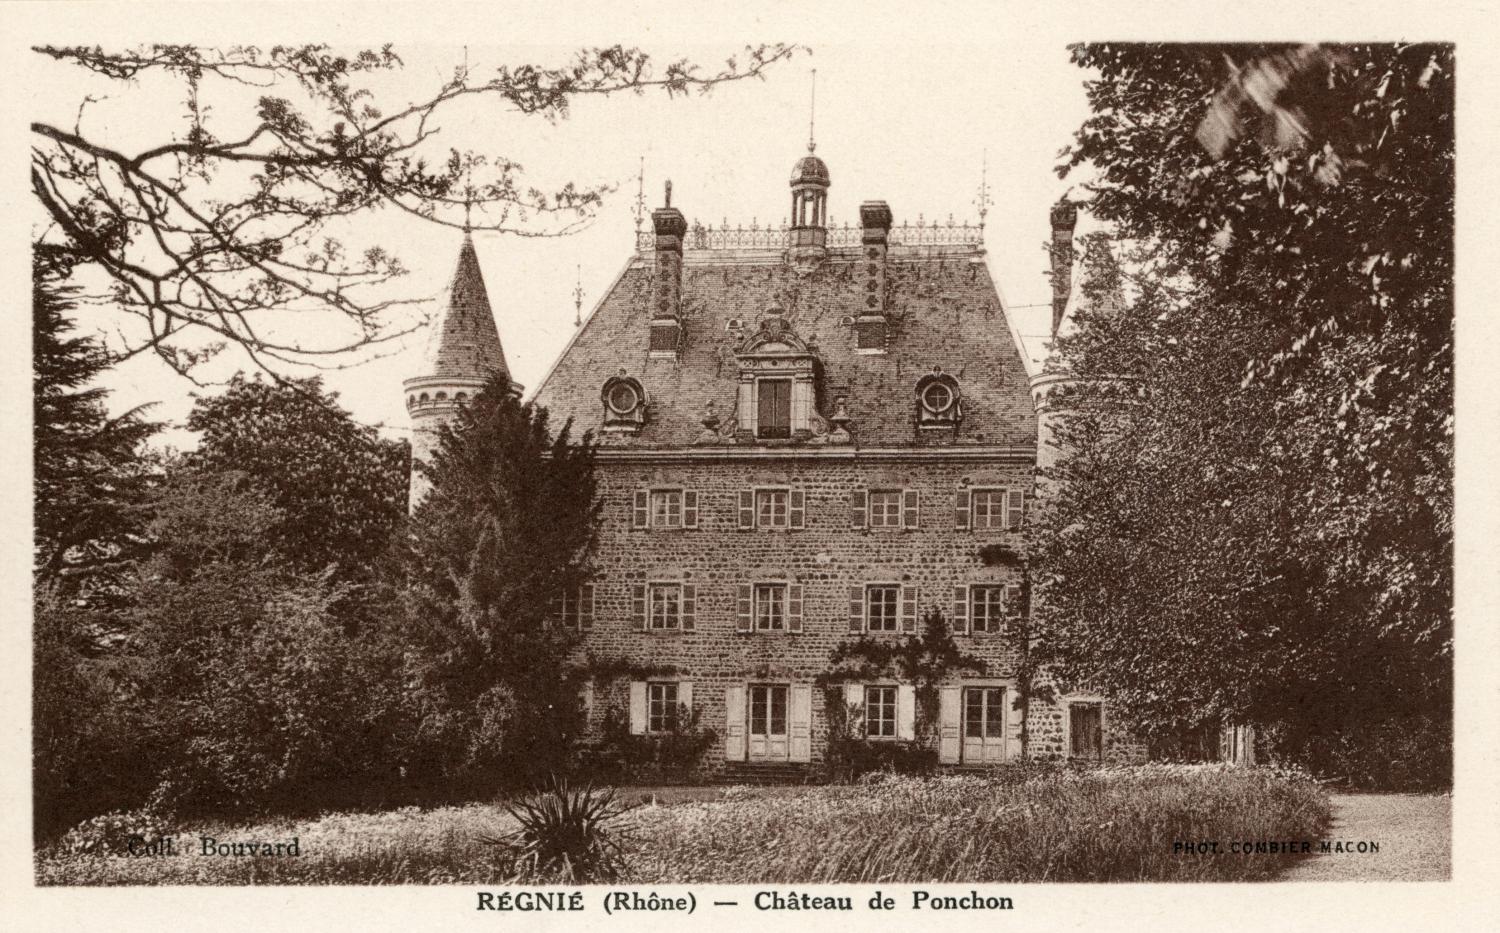 Régnié (Rhône). - Château de Ponchon